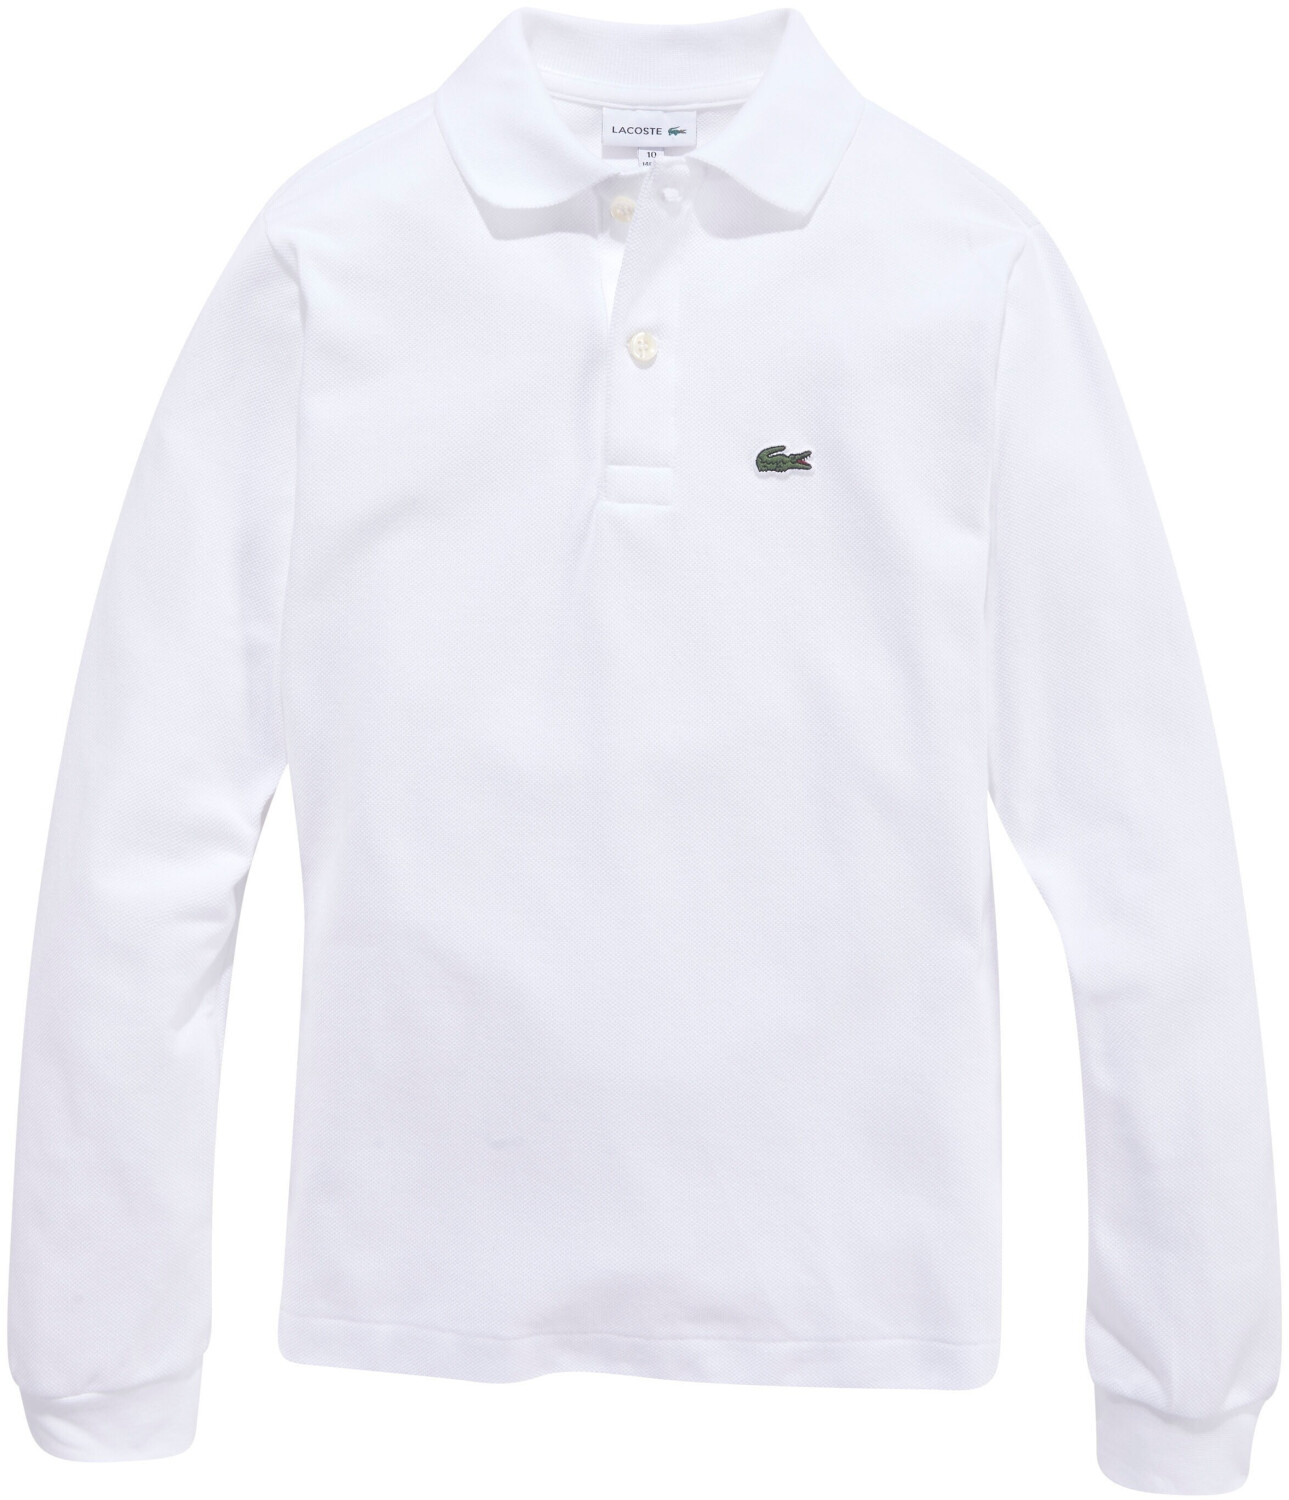 | Preisvergleich € ab white Poloshirt bei (PJ8915-001) 38,50 Lacoste